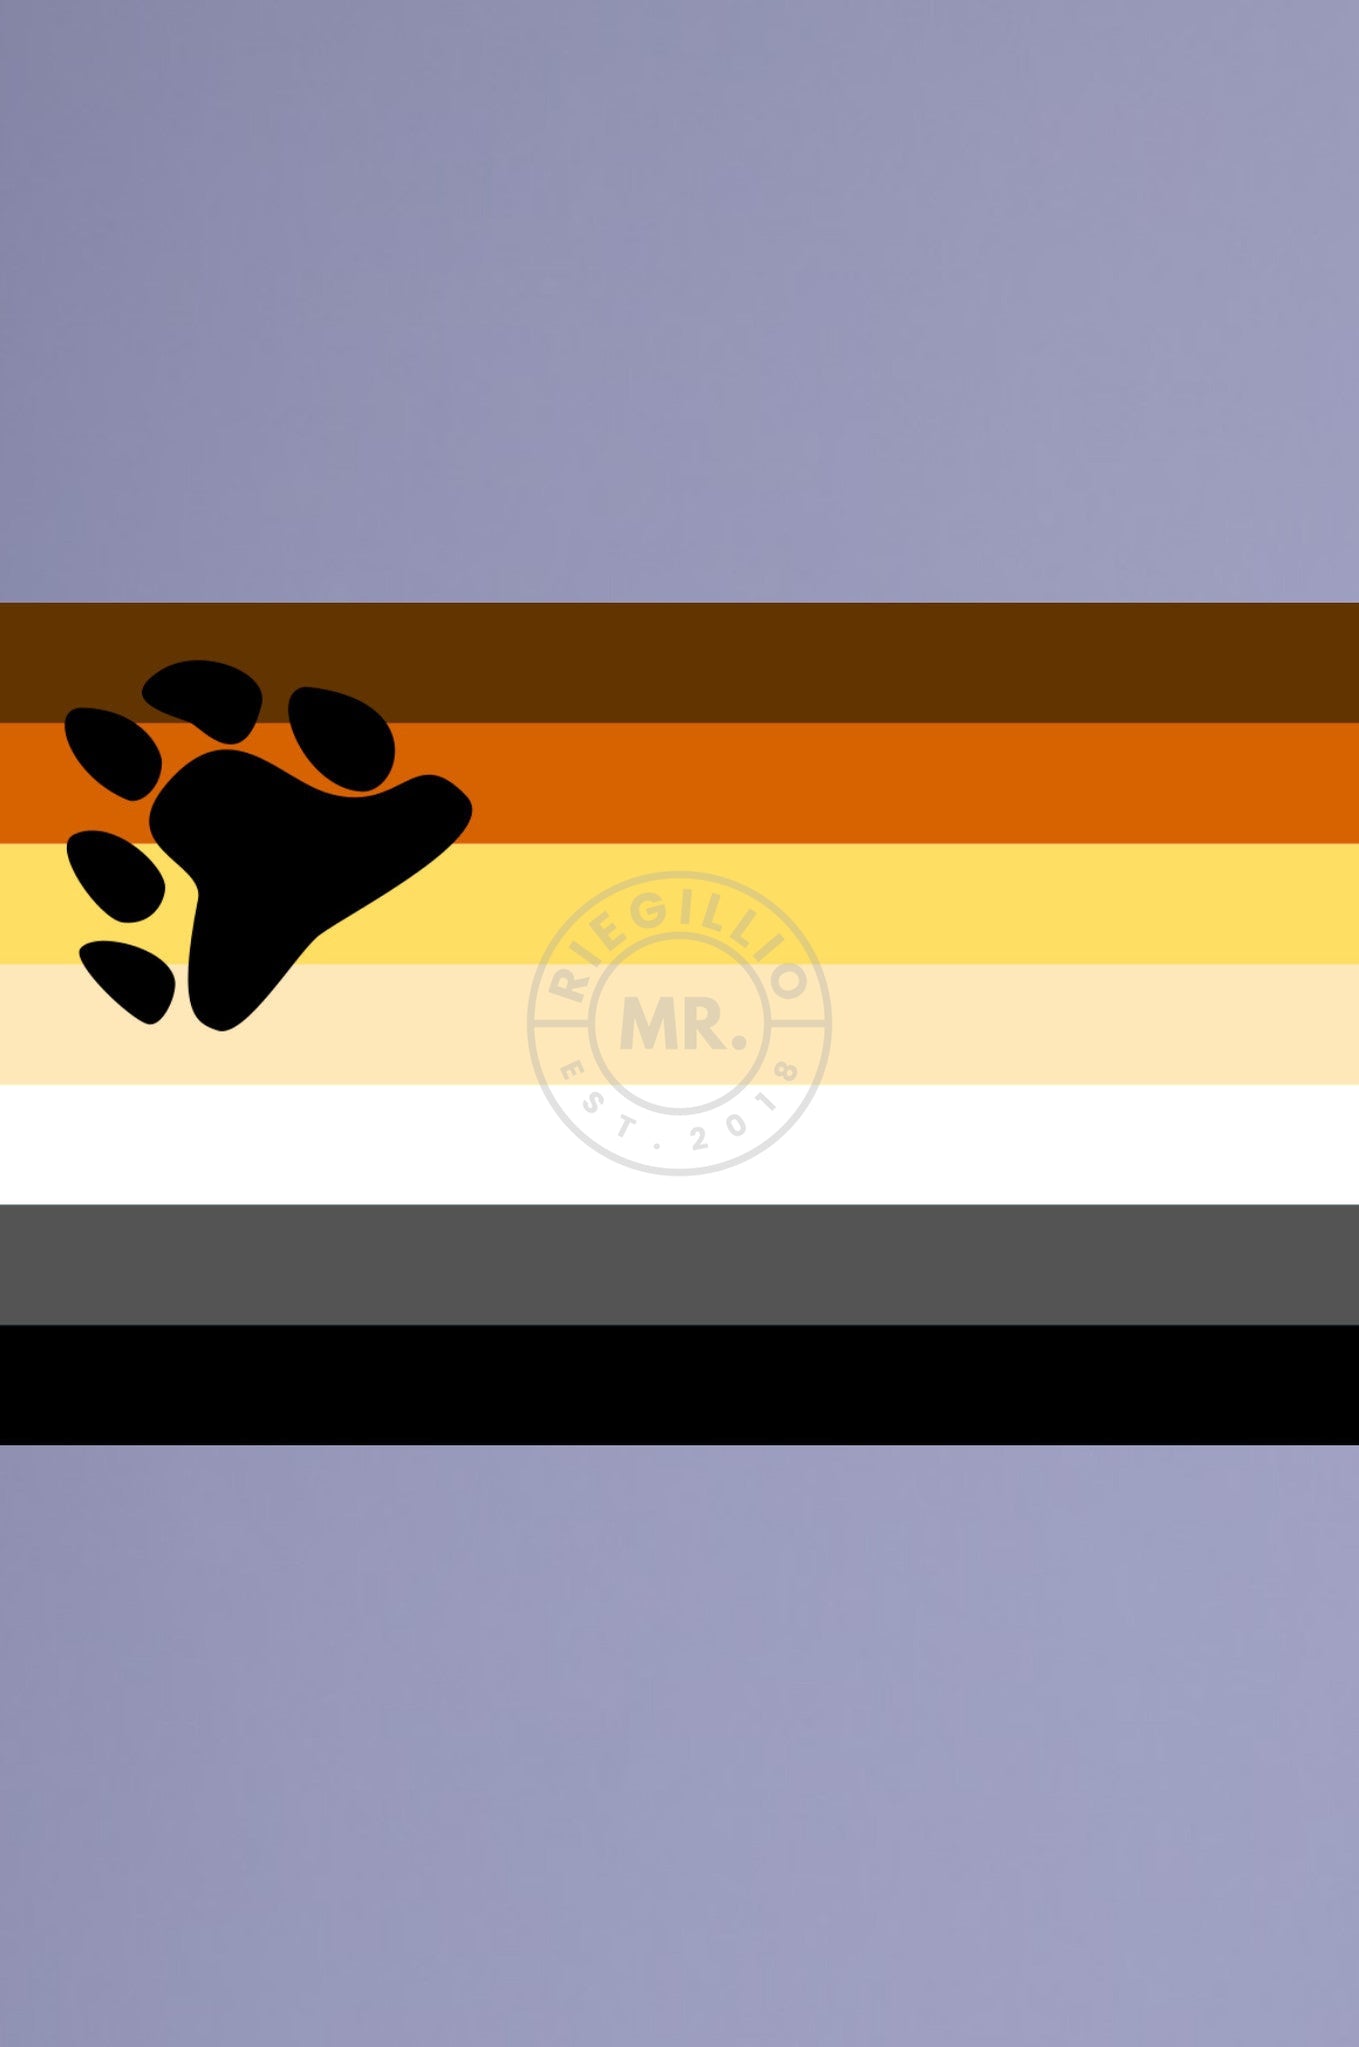 Rainbow Flag, Flag 150 cm - 90 cm, The Pride 